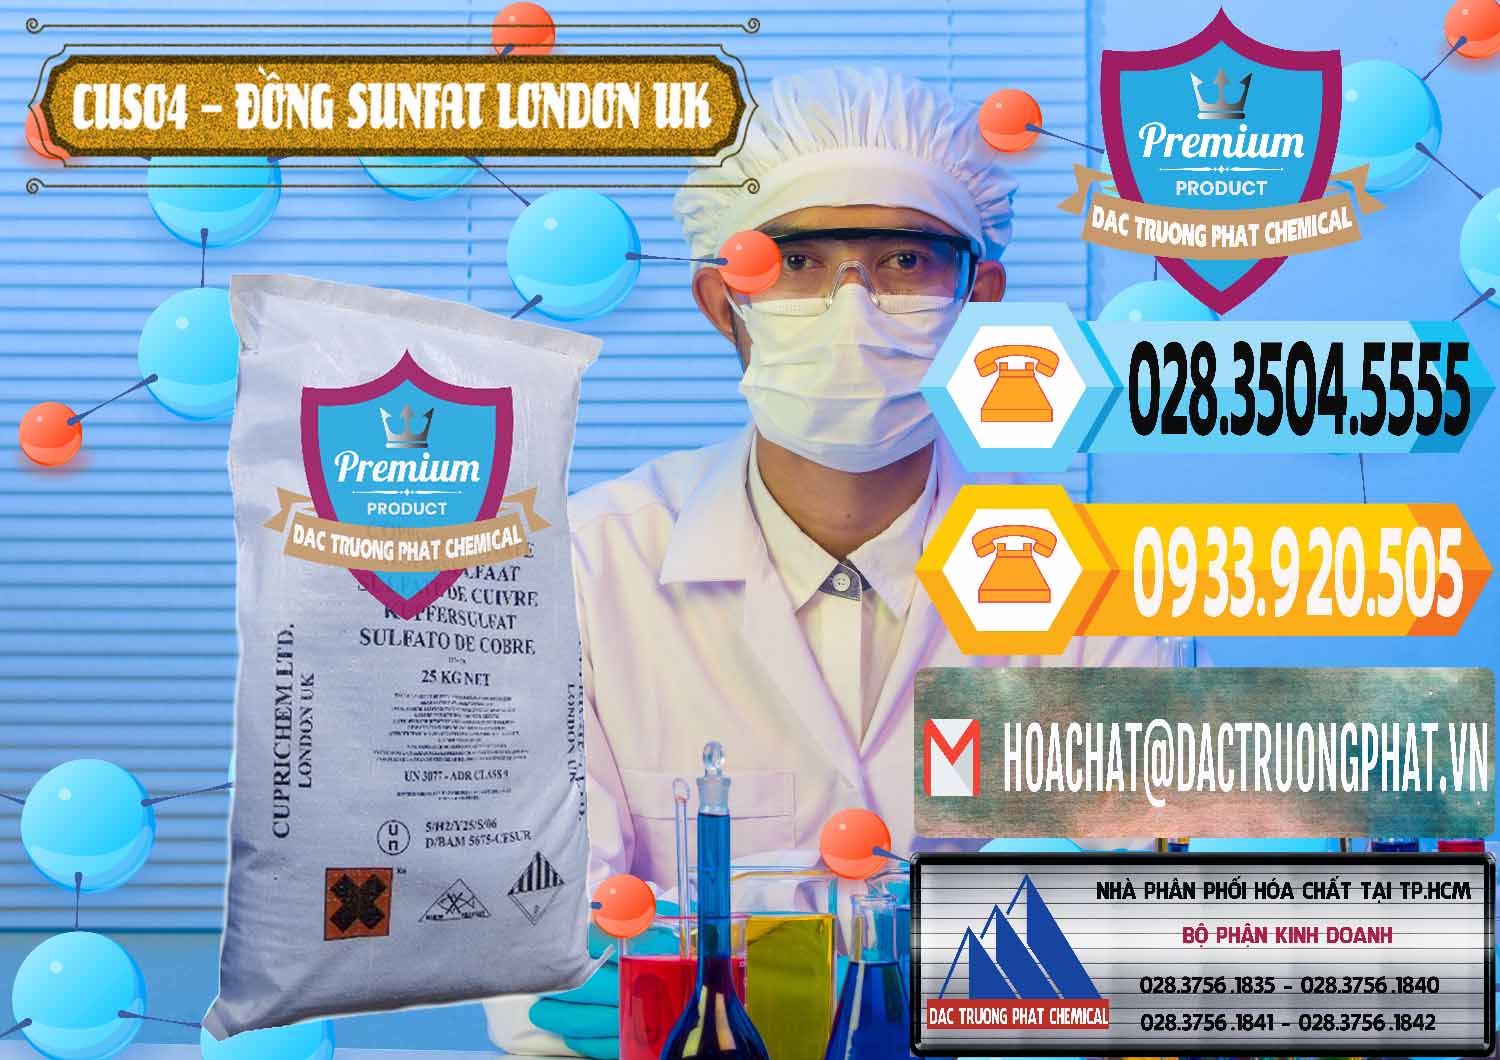 Cty chuyên nhập khẩu _ bán CuSO4 – Đồng Sunfat Anh Uk Kingdoms - 0478 - Đơn vị chuyên cung cấp và nhập khẩu hóa chất tại TP.HCM - hoachattayrua.net